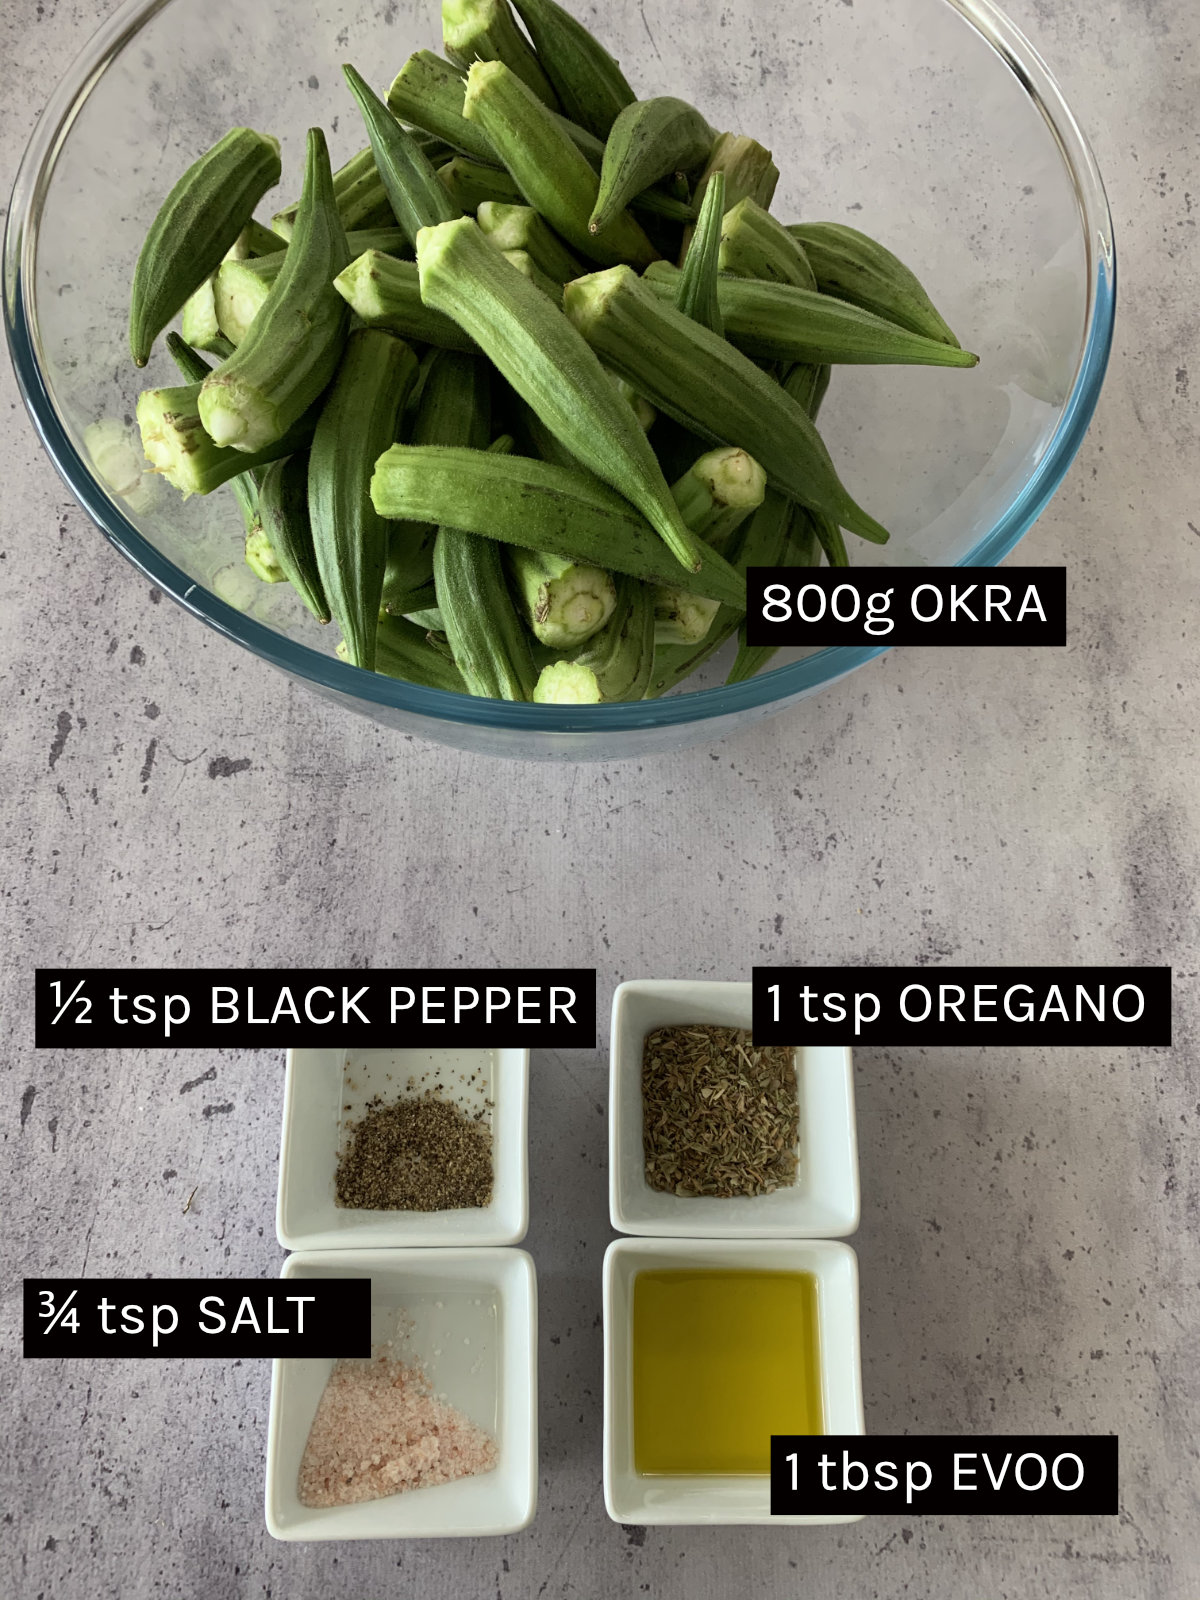 Roasted okra ingredients